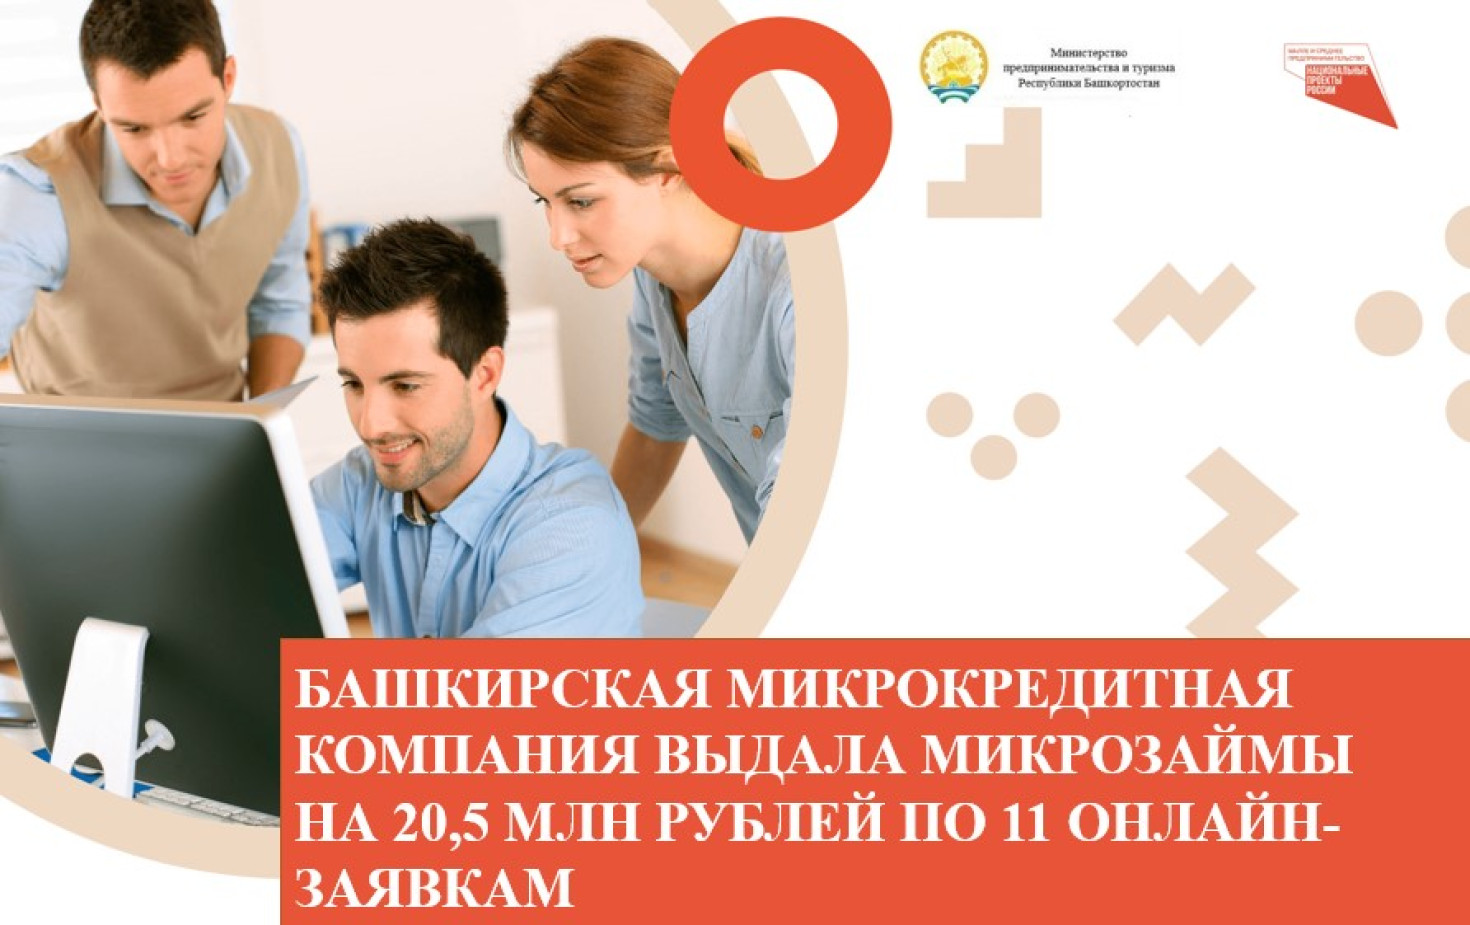 Башкирская микрокредитная компания выдала микрозаймы на 20,5 млн рублей по 11 онлайн-заявкам